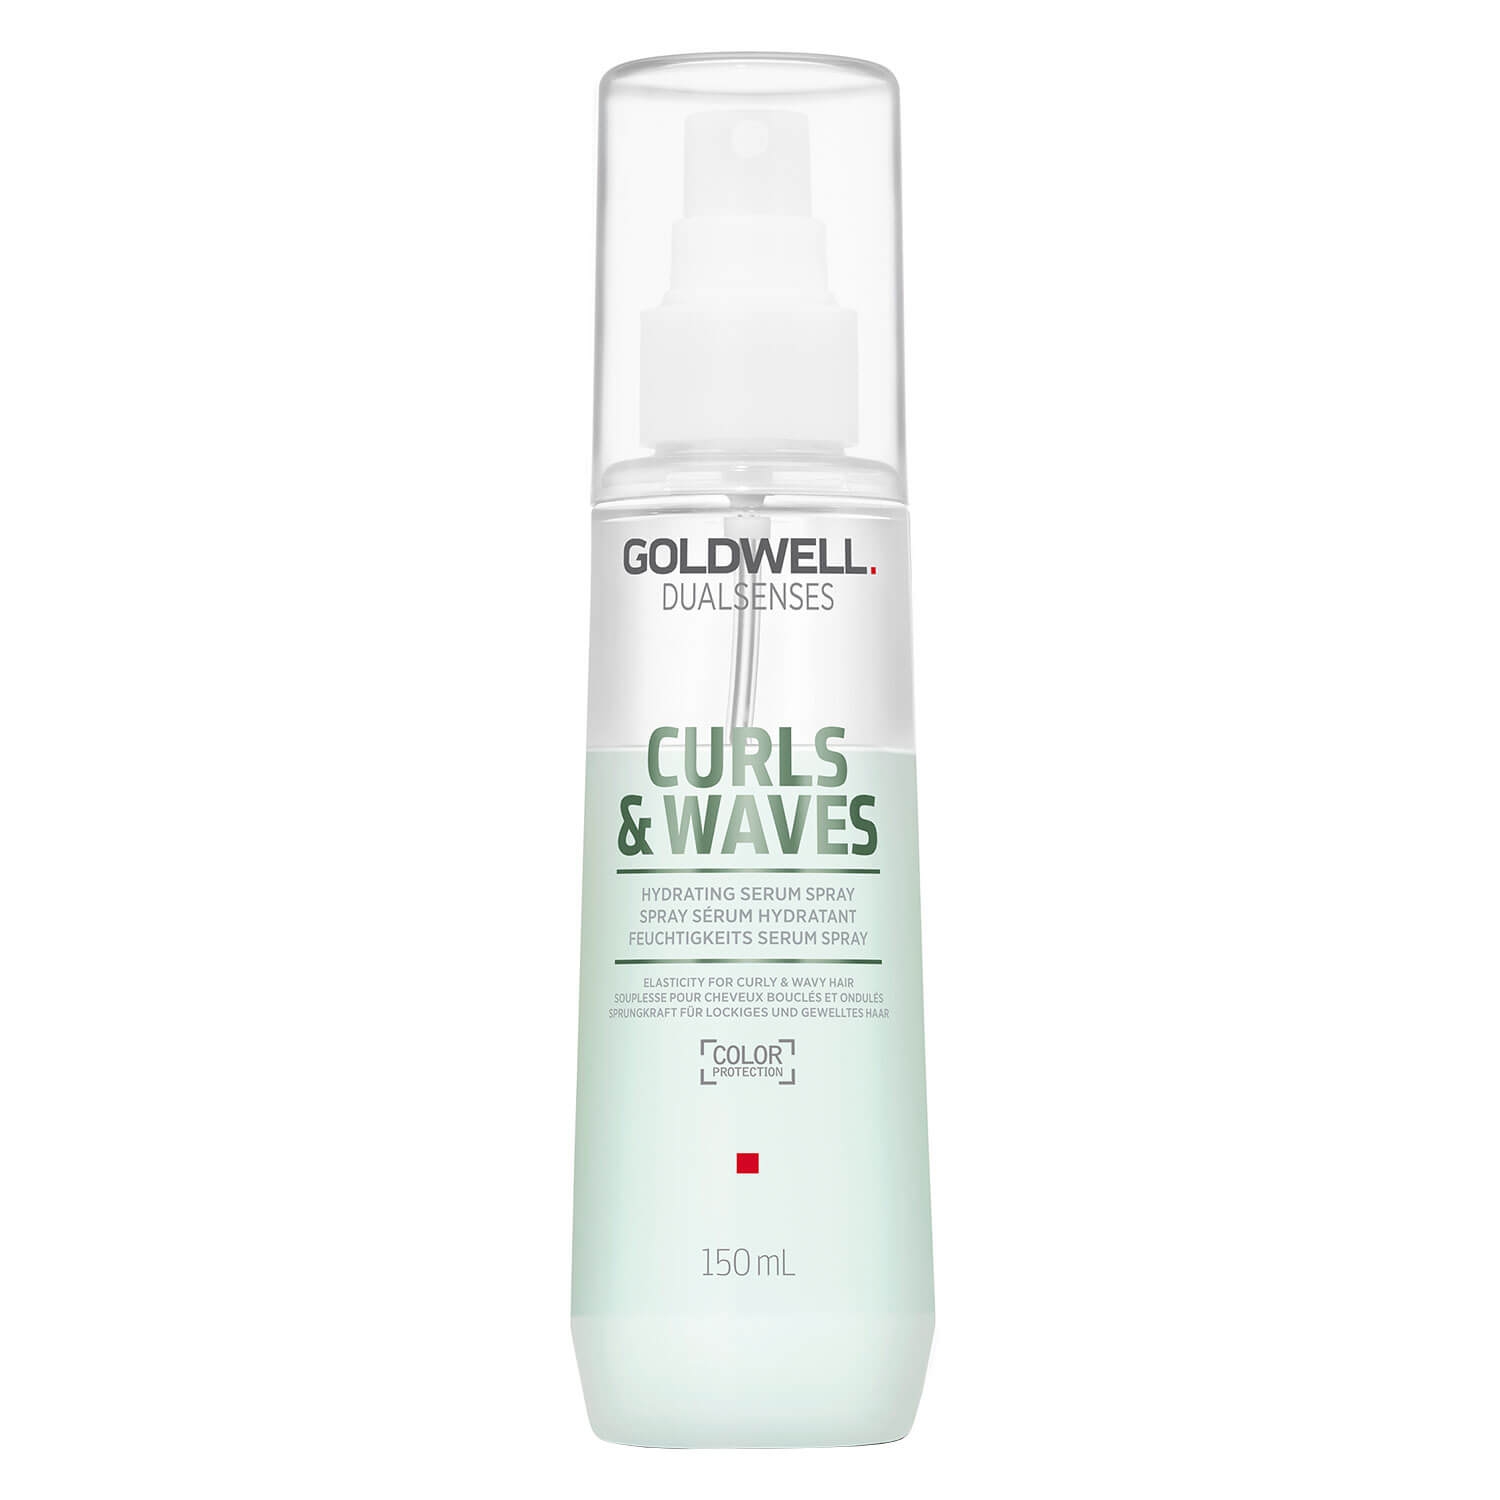 Produktbild von Dualsenses Curls & Waves - Hydrating Serum Spray